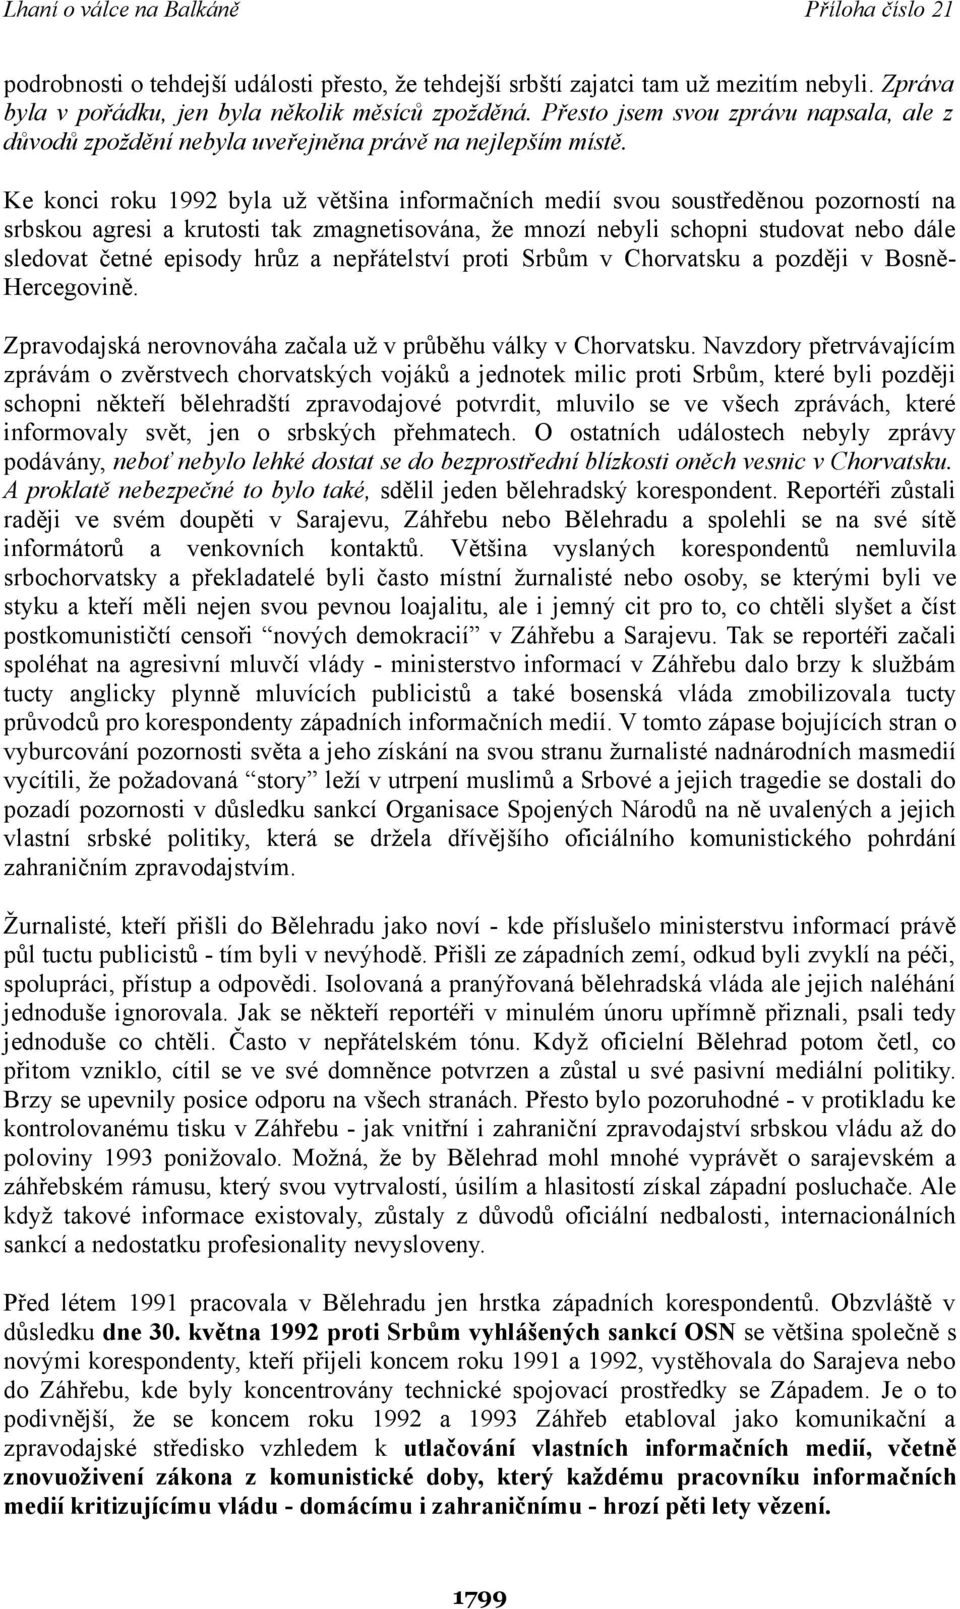 Ke konci roku 1992 byla už většina informačních medií svou soustředěnou pozorností na srbskou agresi a krutosti tak zmagnetisována, že mnozí nebyli schopni studovat nebo dále sledovat četné episody